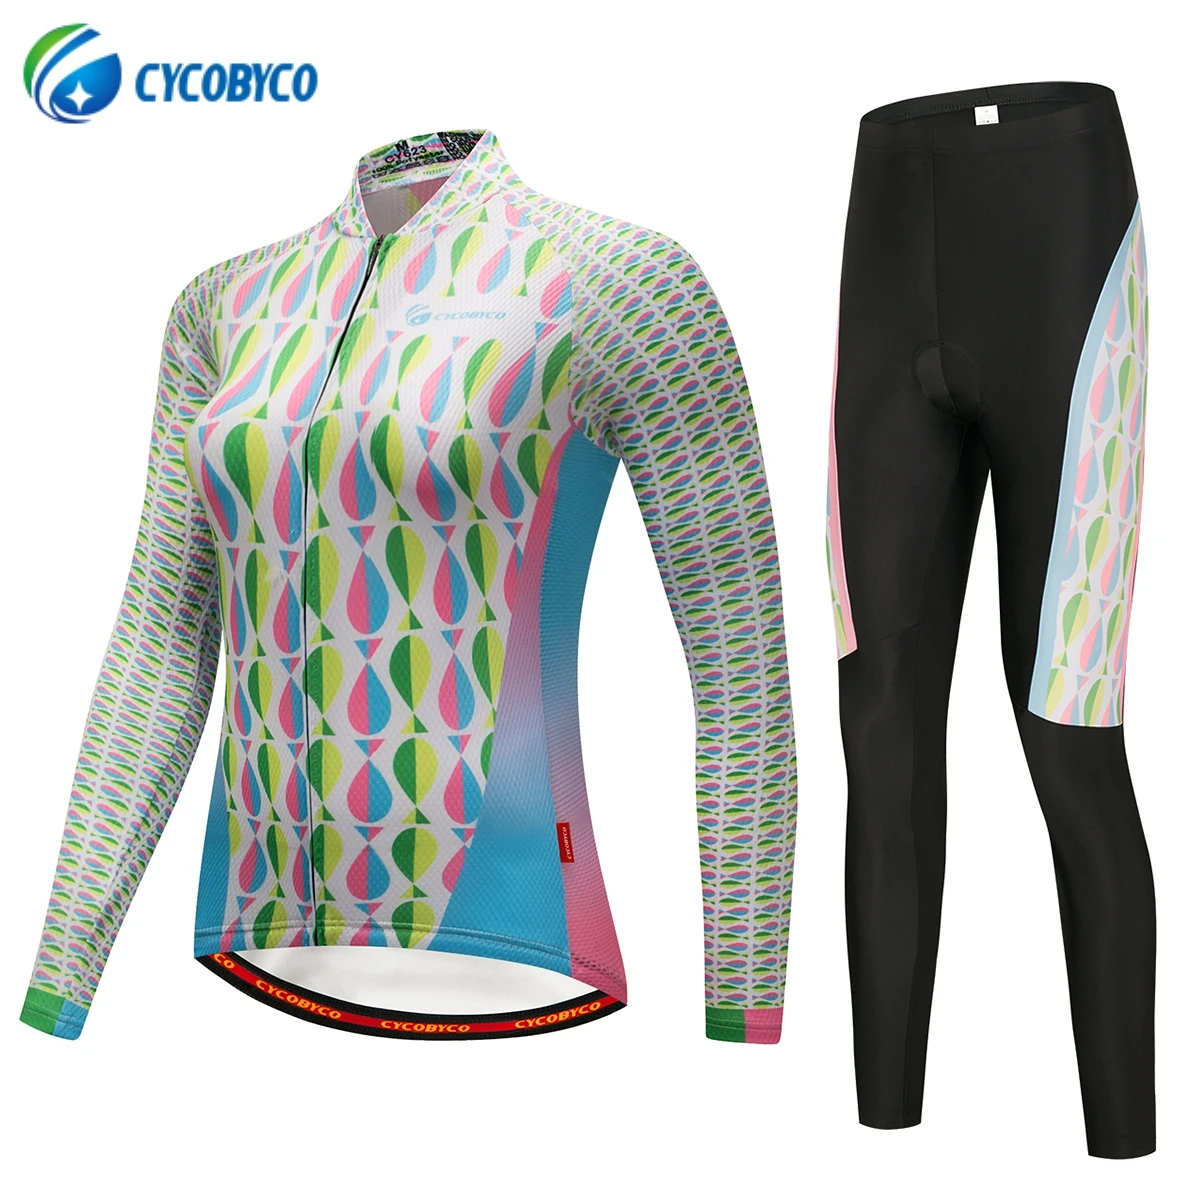 Cycobyco осень Русалка для женщин Велоспорт Джерси Набор/гоночный велосипед одежда Ropa Ciclismo Велоспорт велосипед Длинная одежда для велоспорта